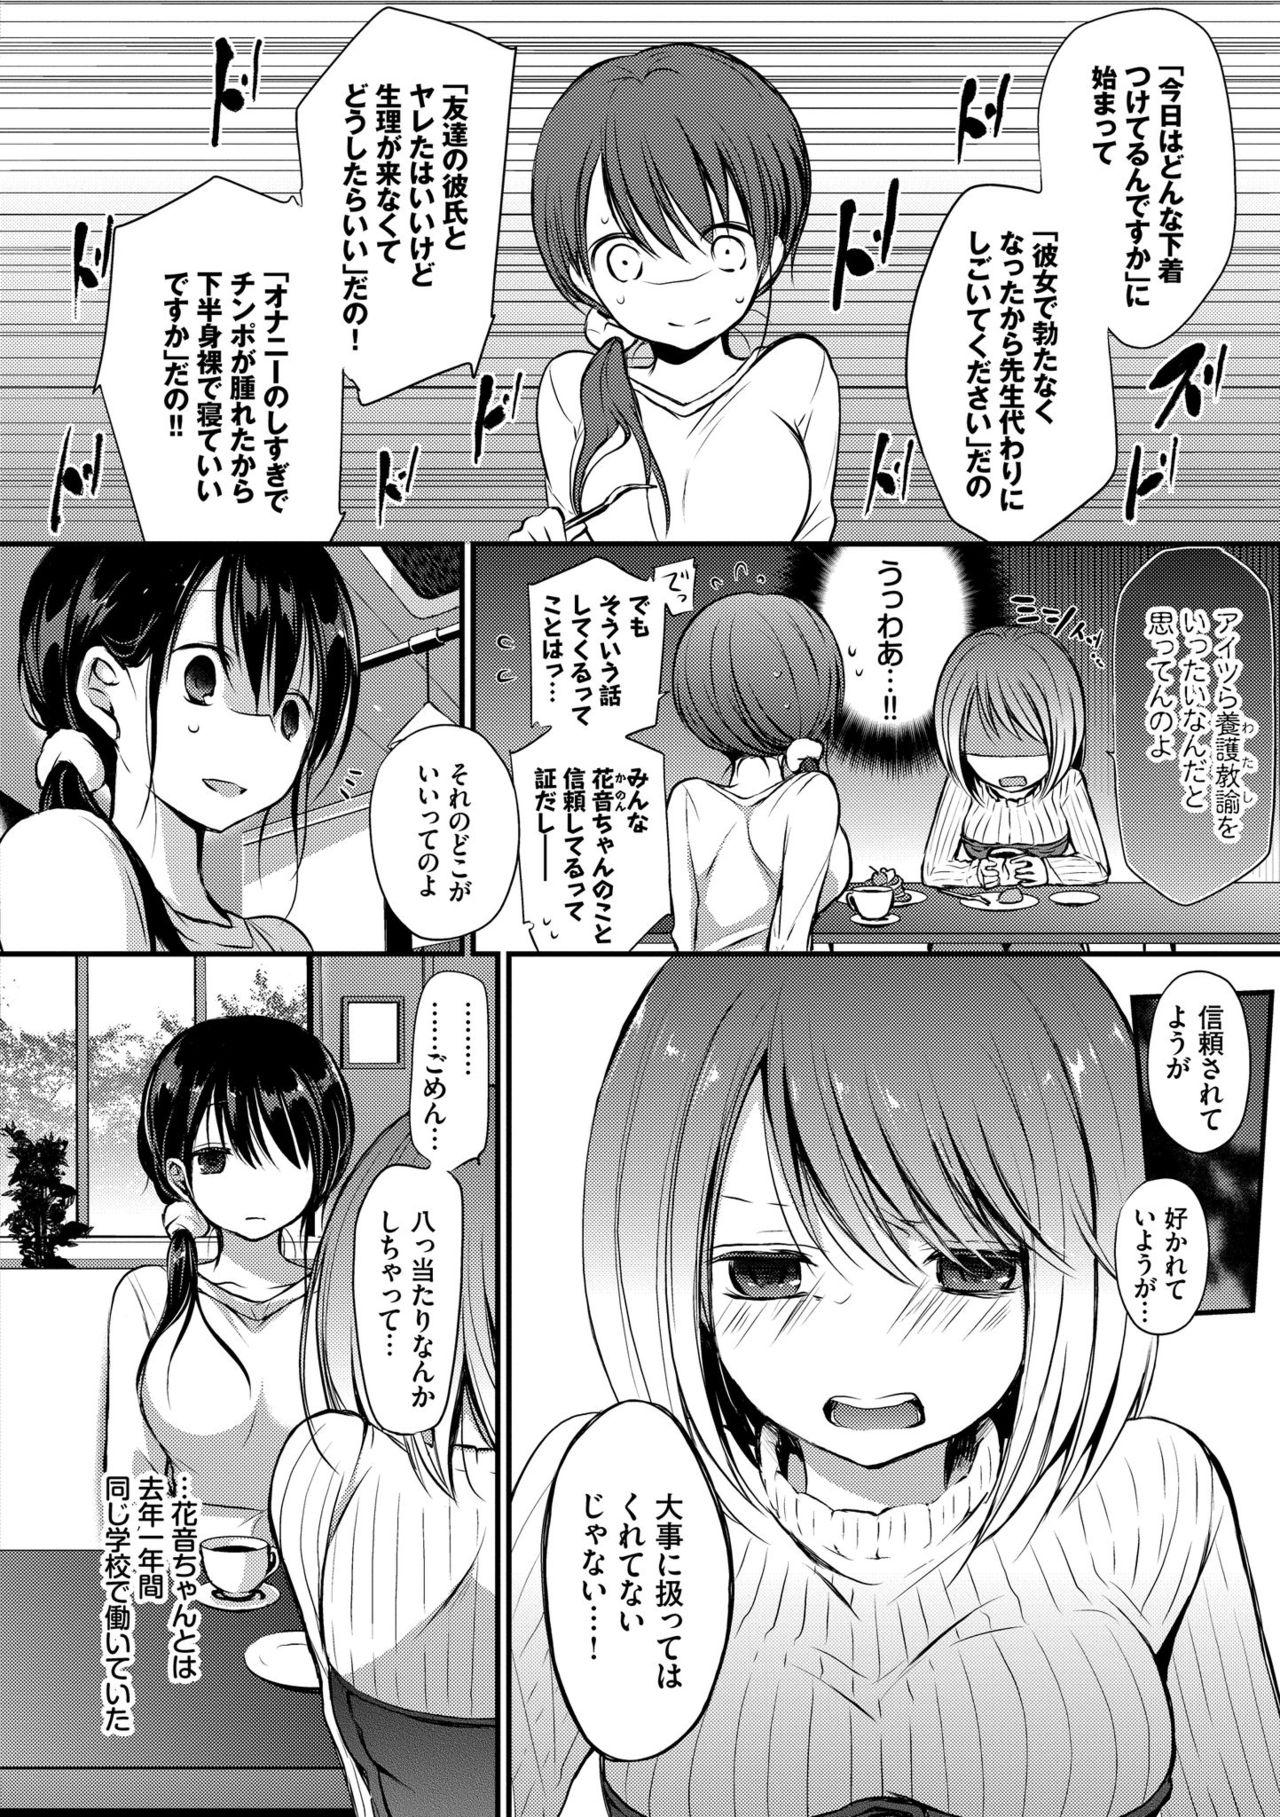 Bunda Suki No Uragawa Free 18 Year Old Porn - Page 6